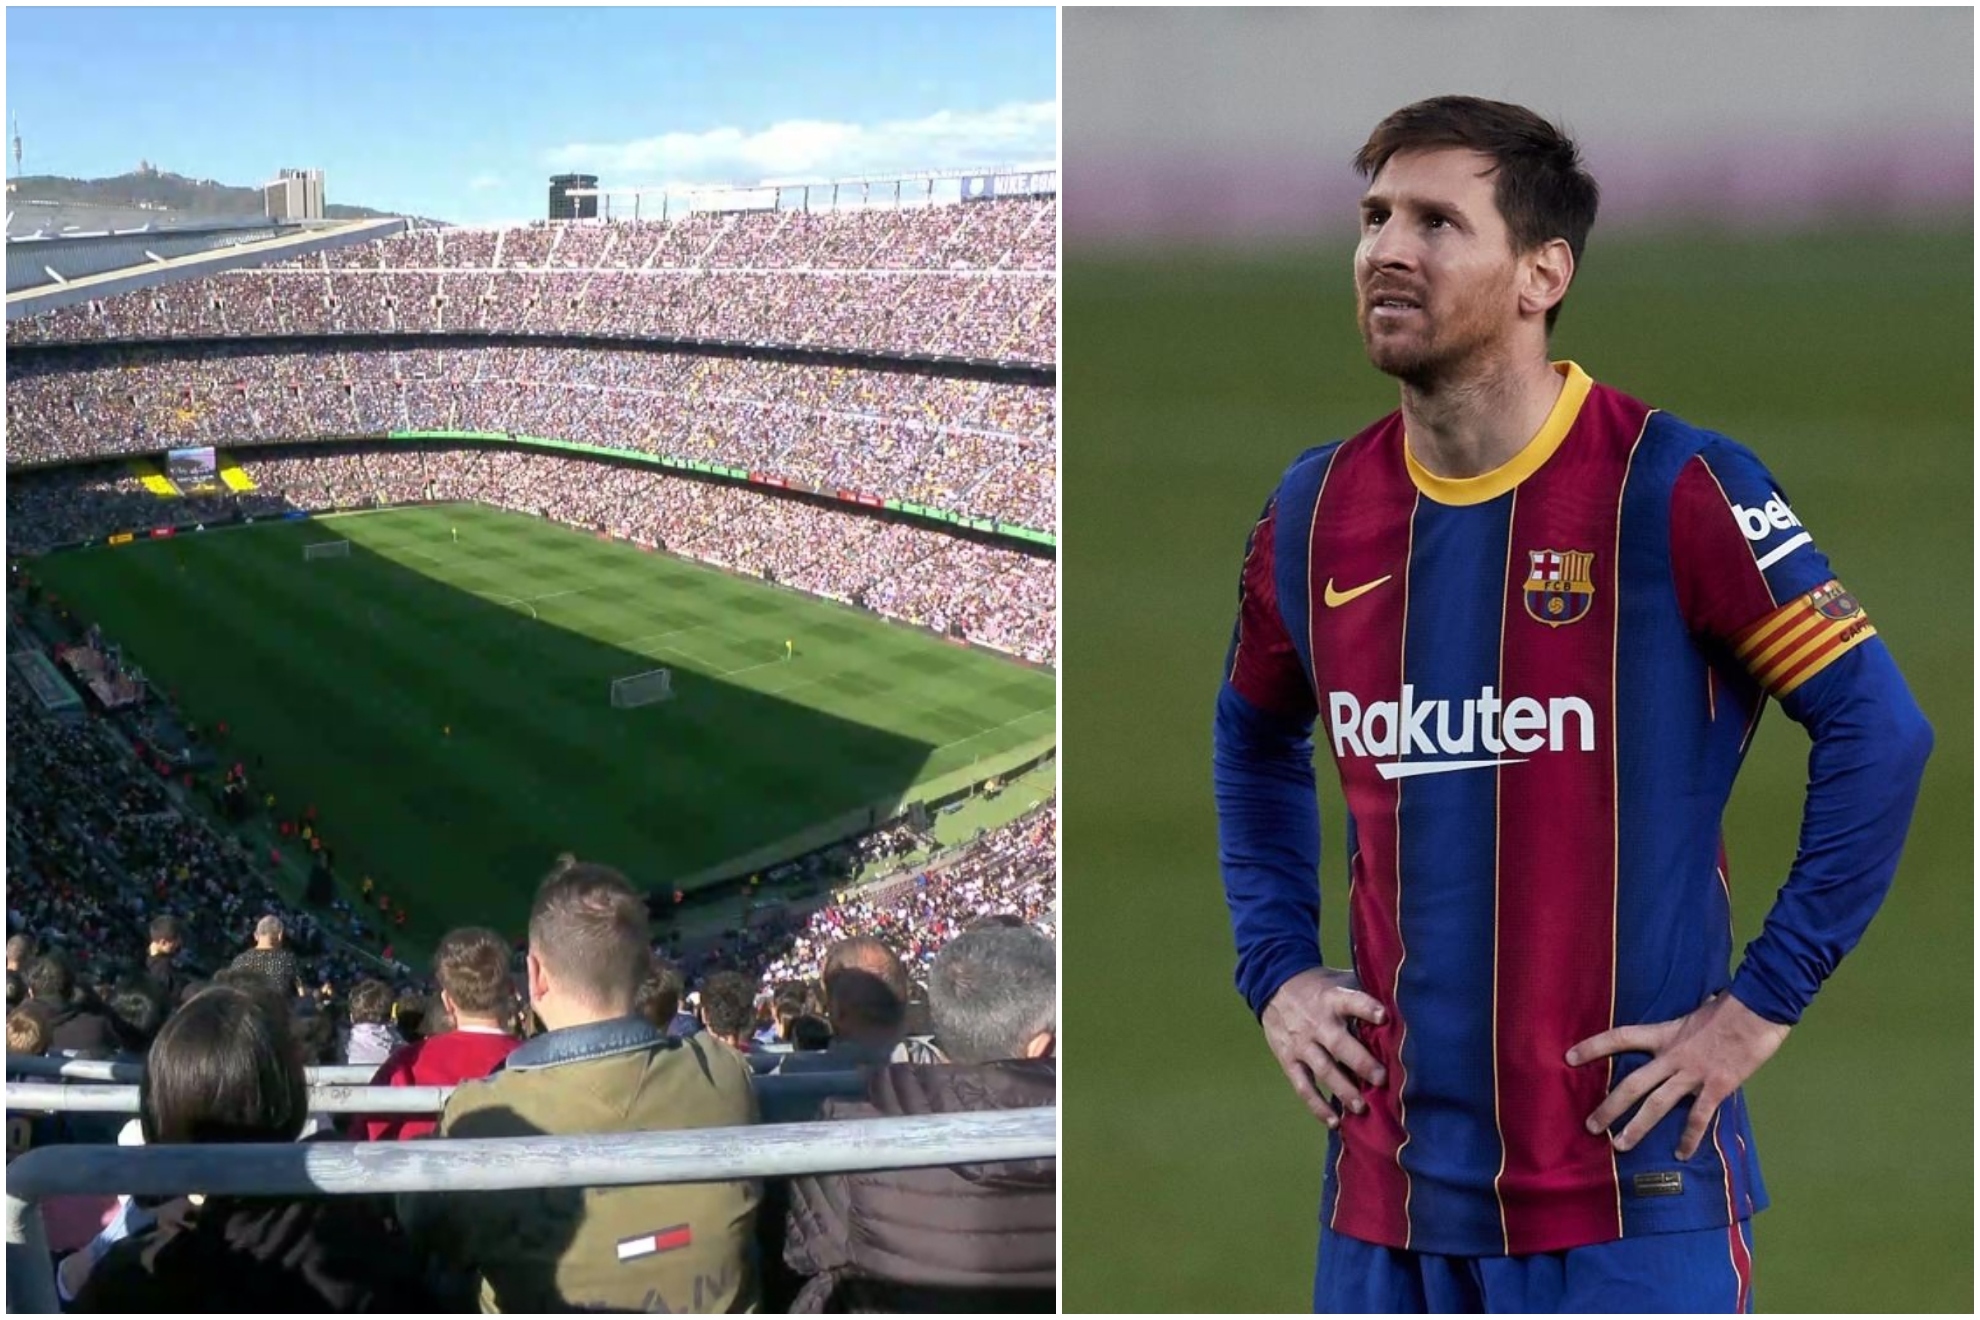 La ovación del Camp Nou a Messi: los culés no olvidan a Leo